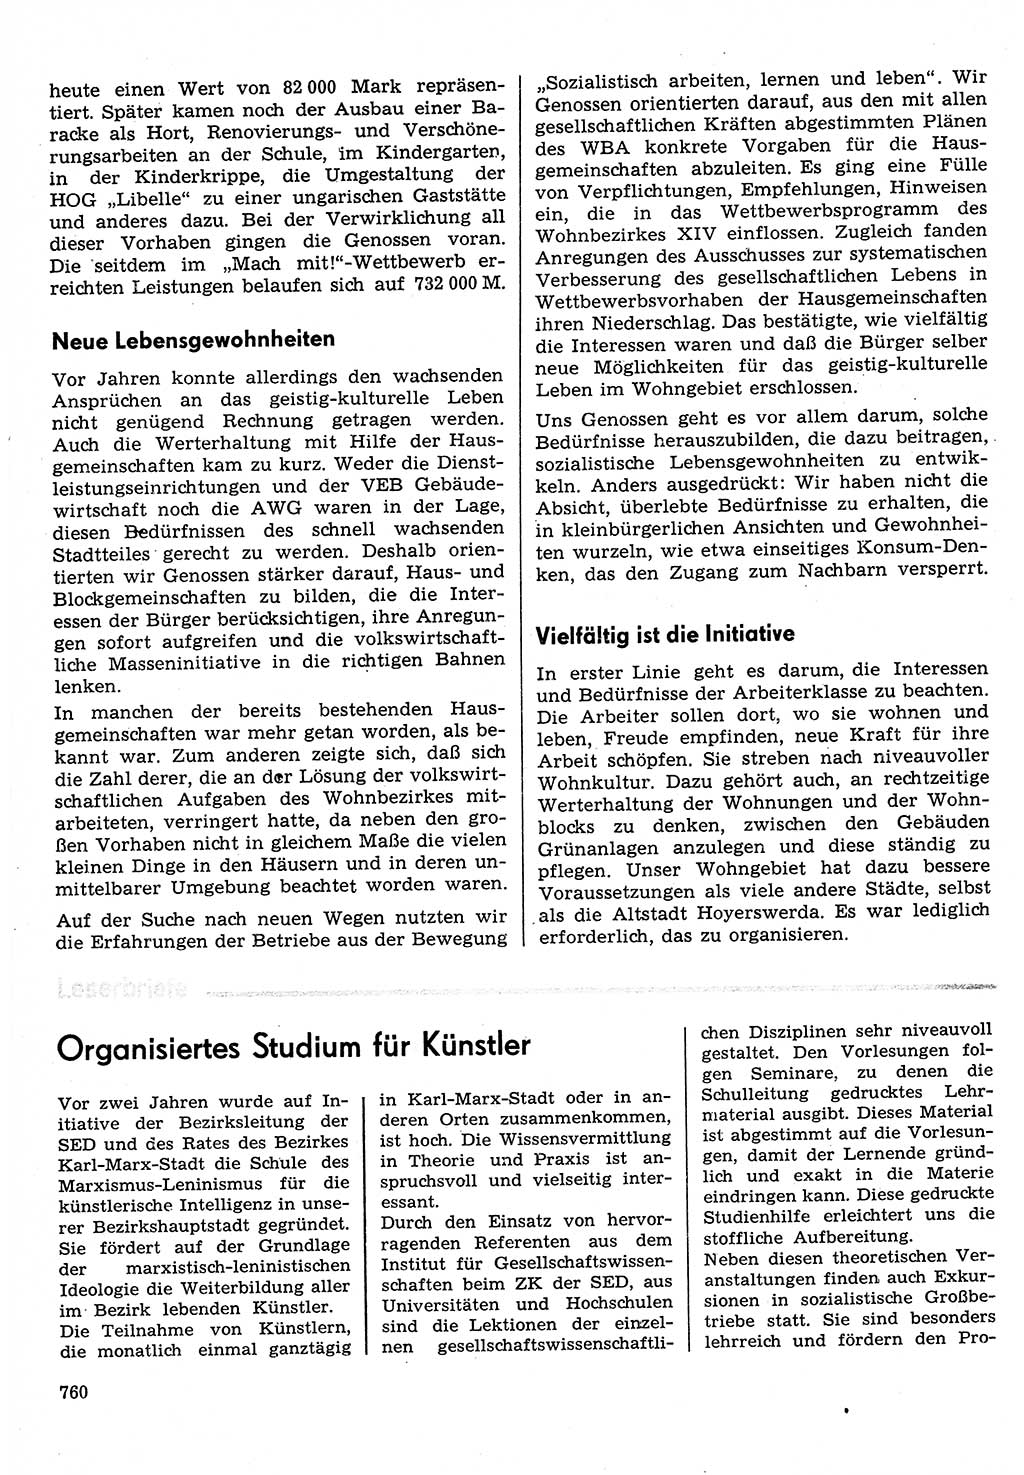 Neuer Weg (NW), Organ des Zentralkomitees (ZK) der SED (Sozialistische Einheitspartei Deutschlands) für Fragen des Parteilebens, 30. Jahrgang [Deutsche Demokratische Republik (DDR)] 1975, Seite 760 (NW ZK SED DDR 1975, S. 760)